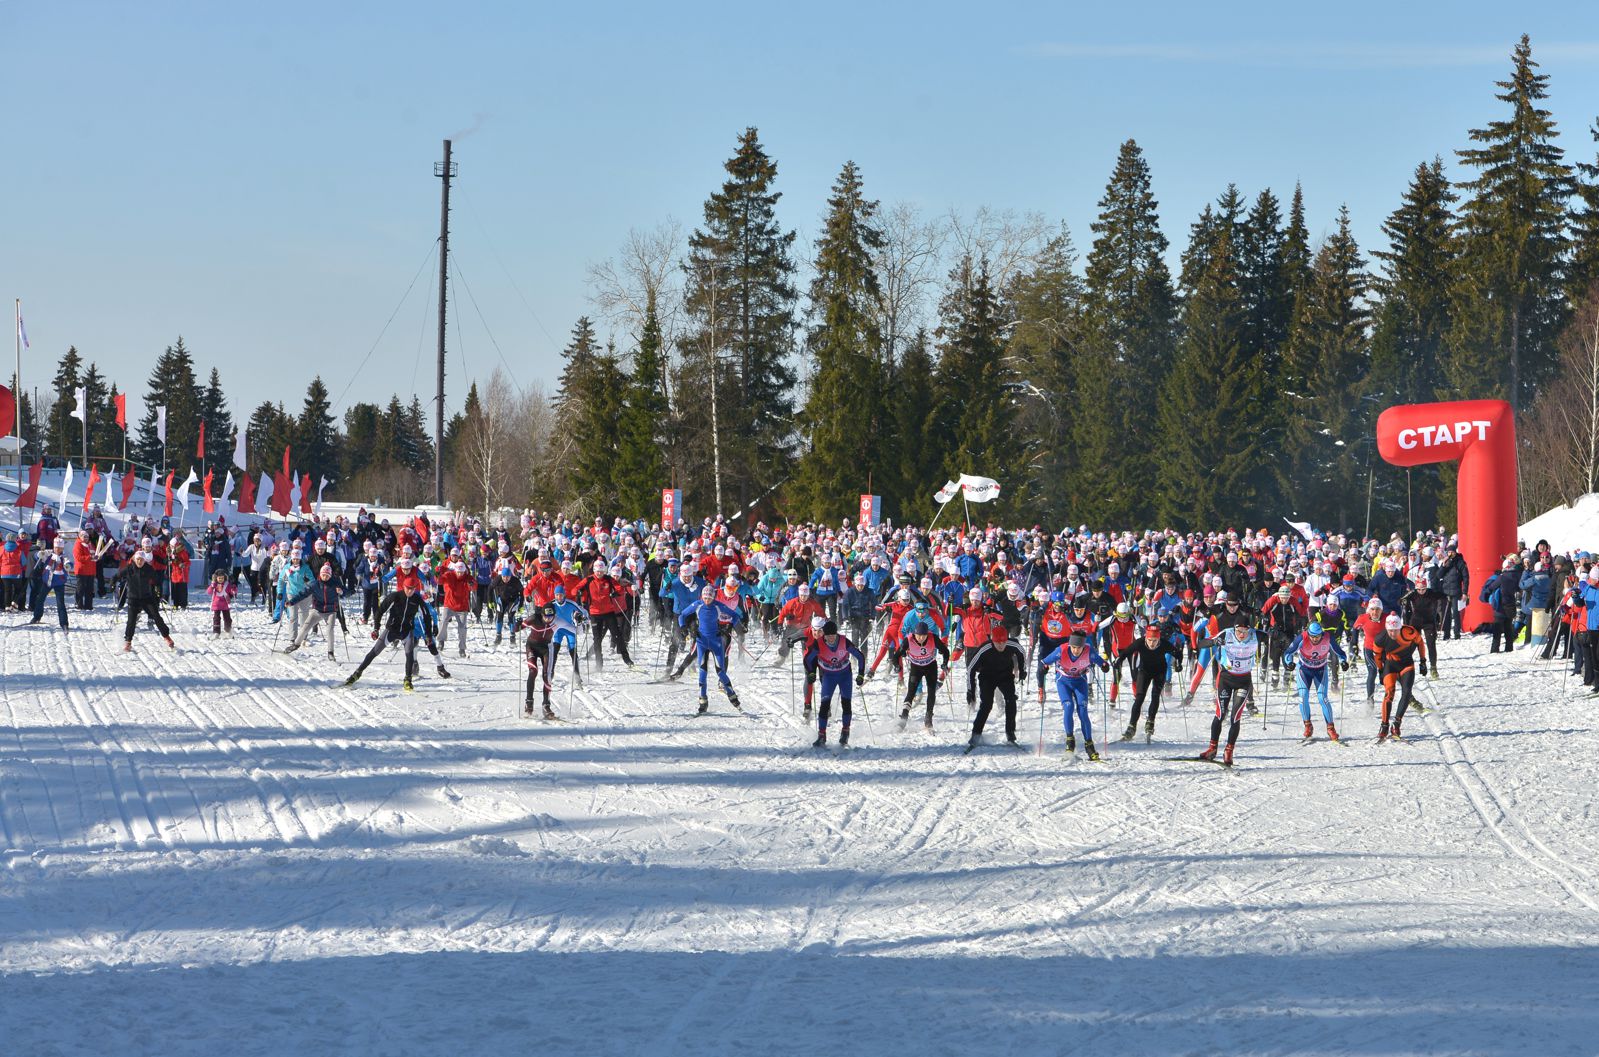 Лукойловцы Прикамья проведут фестиваль лыжного спорта